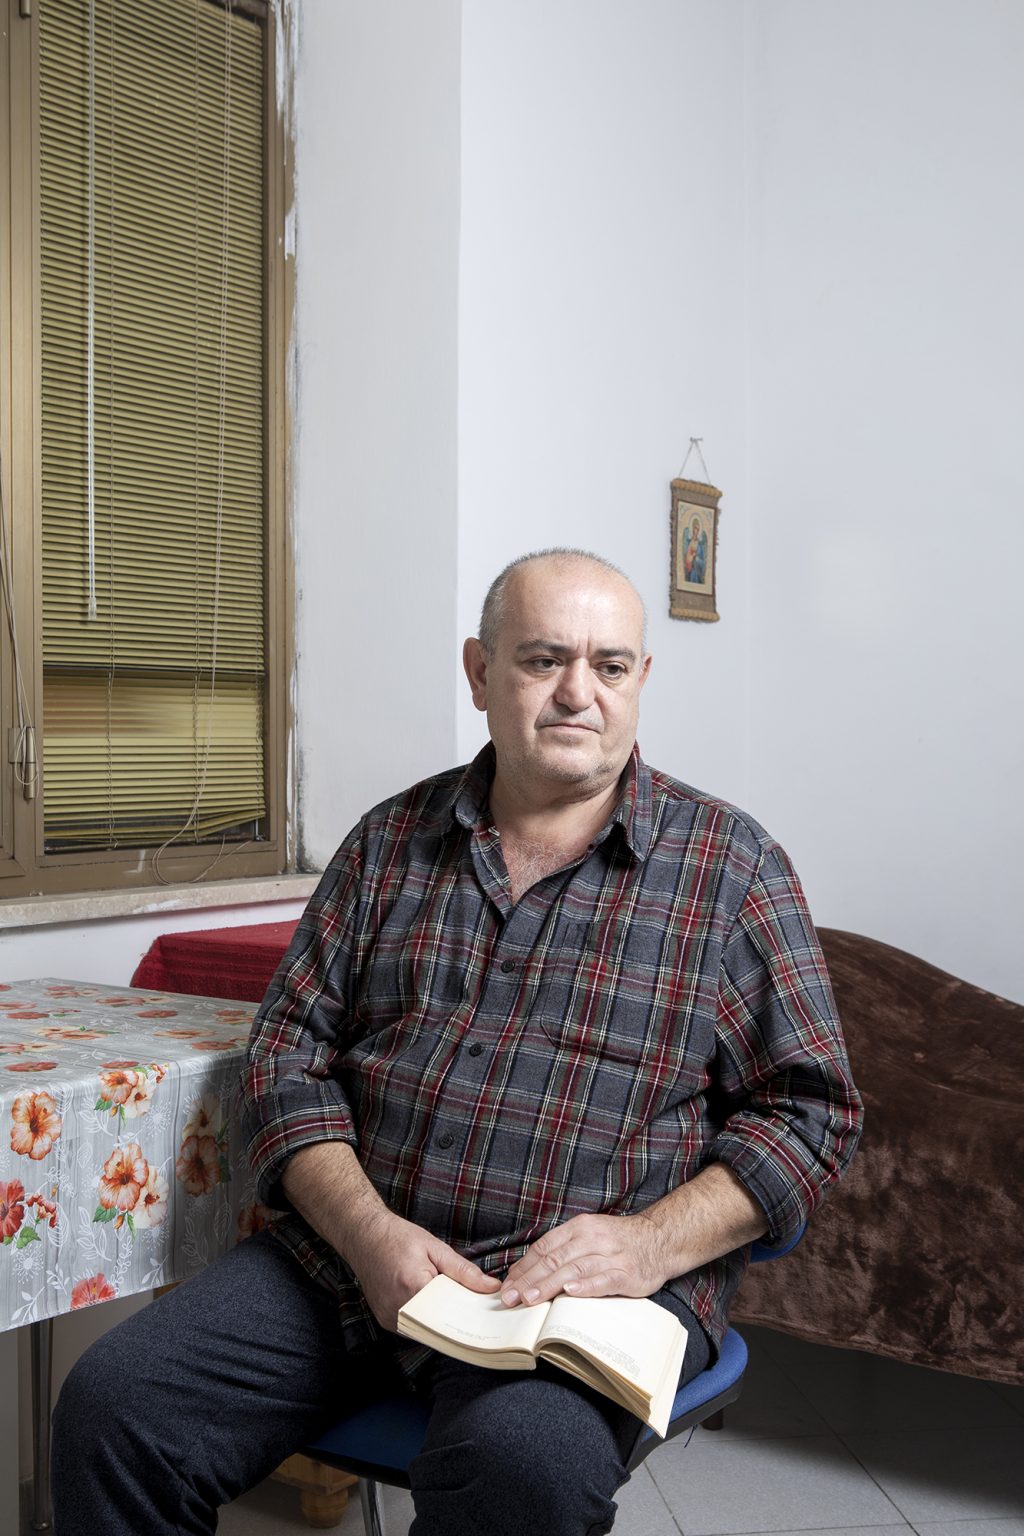 Anagni (FR), Italia, 15 Dicembre 2022. Serhii Avanesian, 54 anni, ritratto nel Centro di Accoglienza Straordinaria (CAS) gestito dalla cooperativa Diaconia in Anagni (FR) dove è attualmente ospitato insieme ad altri rifugiati ucraini. Serhii è nato in Azerbaijan da genitori di origine armena ed è un medico specialista della colonna vertebrale. Nel 1991 si è laureato in medicina all’università di Baku e nel 1992 ha dovuto lasciare la sua casa a Nagorno-Karabach a causa del conflitto tra la maggioranza etnica armena, sostenuta dalla Repubblica Armena, e la repubblica dell’Azerbaijan. Insieme alla moglie, anch’essa medico, si è trasferito a Pjatigorsk, in Russia. Dopo circa 10 anni, in seguito alla separazione dalla moglie, decide di trasferirsi a Kherson, in Ucraina. Li inizia a lavorare nell’ospedale cittadino e nel suo studio privato. Serhii riferisce di aver guadagnato bene, tanto che si è potuto permettere di costruirsi una villetta a circa 30 km da Kherson, dove viveva fino all’inizio del conflitto. La sua casa si trova sulla riva sinistra del fiume Dnipr, in un territorio attualmente occupato dall’esercito russo, proprio sulla strada percorsa dall’esercito russo proveniente dalla Crimea. Per due mesi ha vissuto sotto l’occupazione russa. Grazie alle sue disponibilità economiche all’inizio del conflitto era riuscito a farsi una cospicua scorta di generi alimentari e di prima necessità, che gli hanno permesso, durante il primo mese di occupazione, di non uscire di casa. Ha iniziato anche a farsi il pane da solo, che condivideva con gli anziani del luogo e altre persone bisognose. Racconta che per tutto il periodo dell’occupazione i vetri della casa tremavano incessantemente a causa dei rumori delle esplosioni e degli elicotteri che volavano a quota bassissima. Dopo il primo mese ha cominciato ad uscire di casa per procurarsi i viveri. Racconta che chi volesse uscire doveva esporre una bandiera bianca dall’automobile, precauzione che